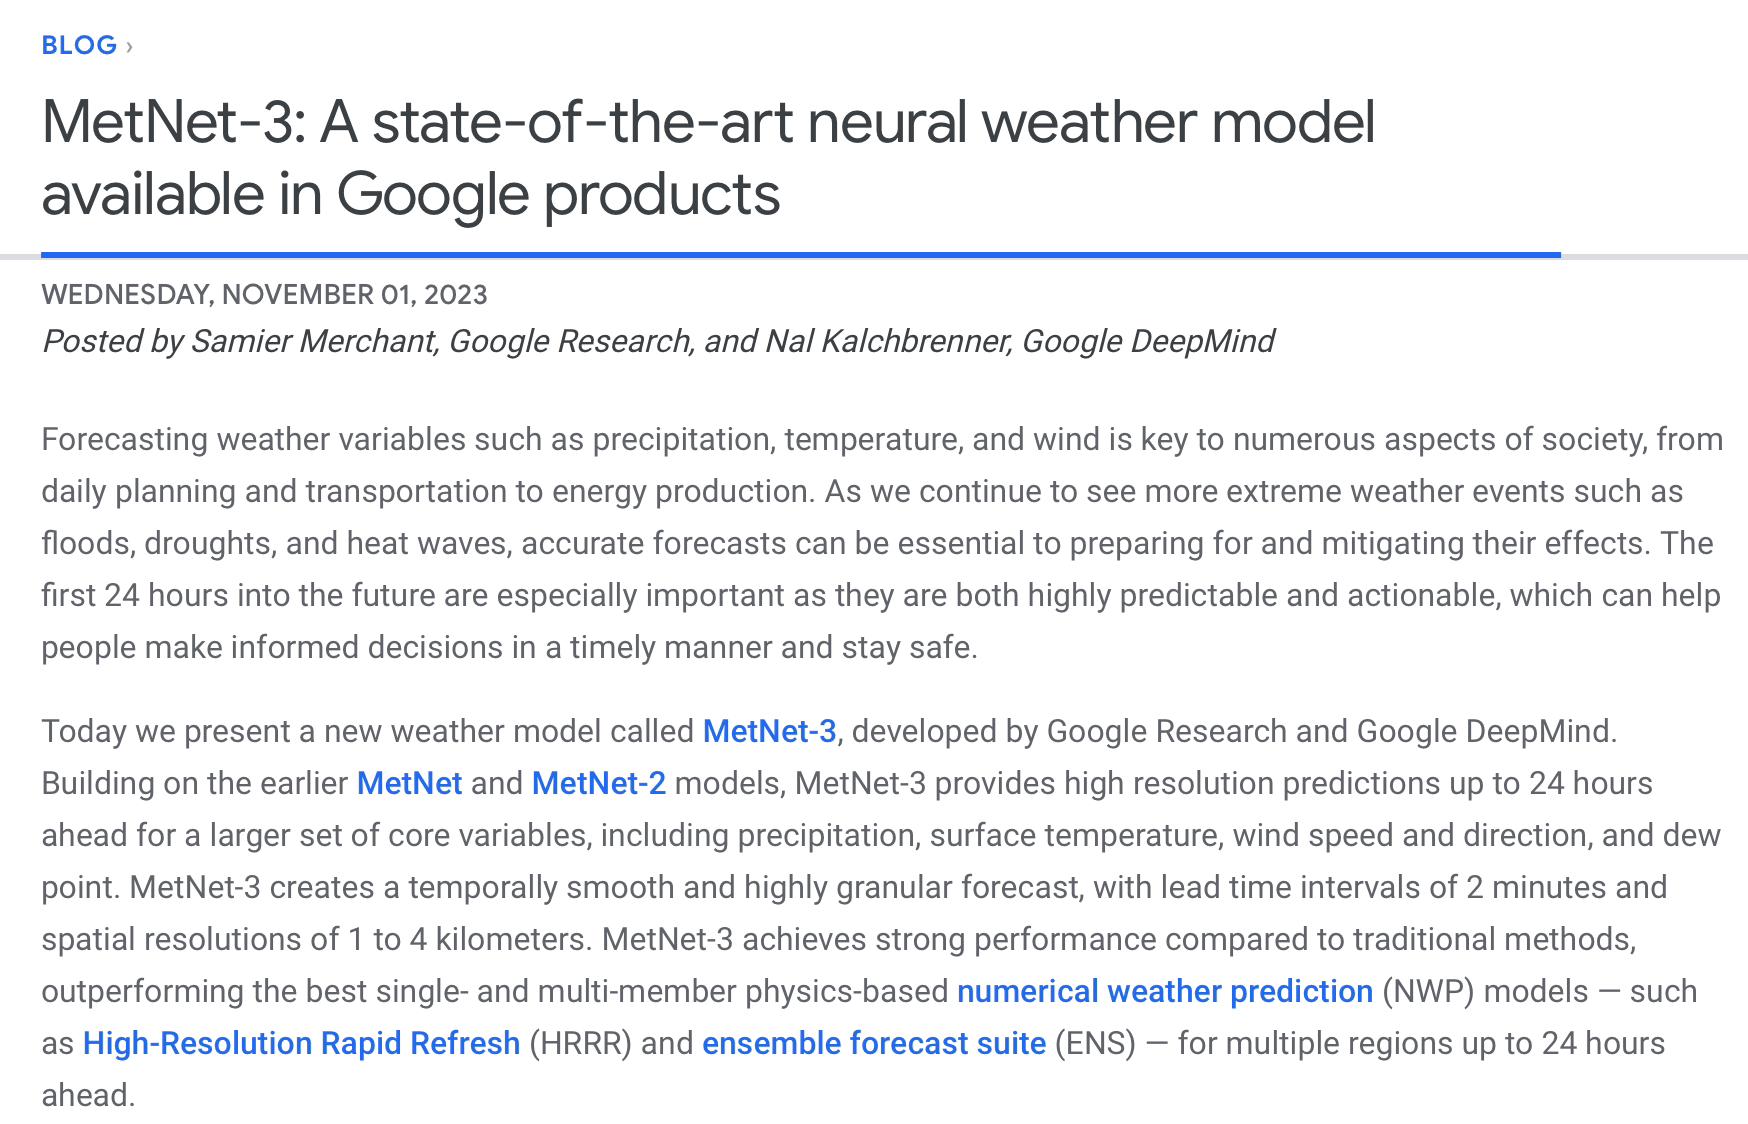 谷歌推出“先进天气预报 AI”MetNet-3，号称预测结果超过传统物理模型